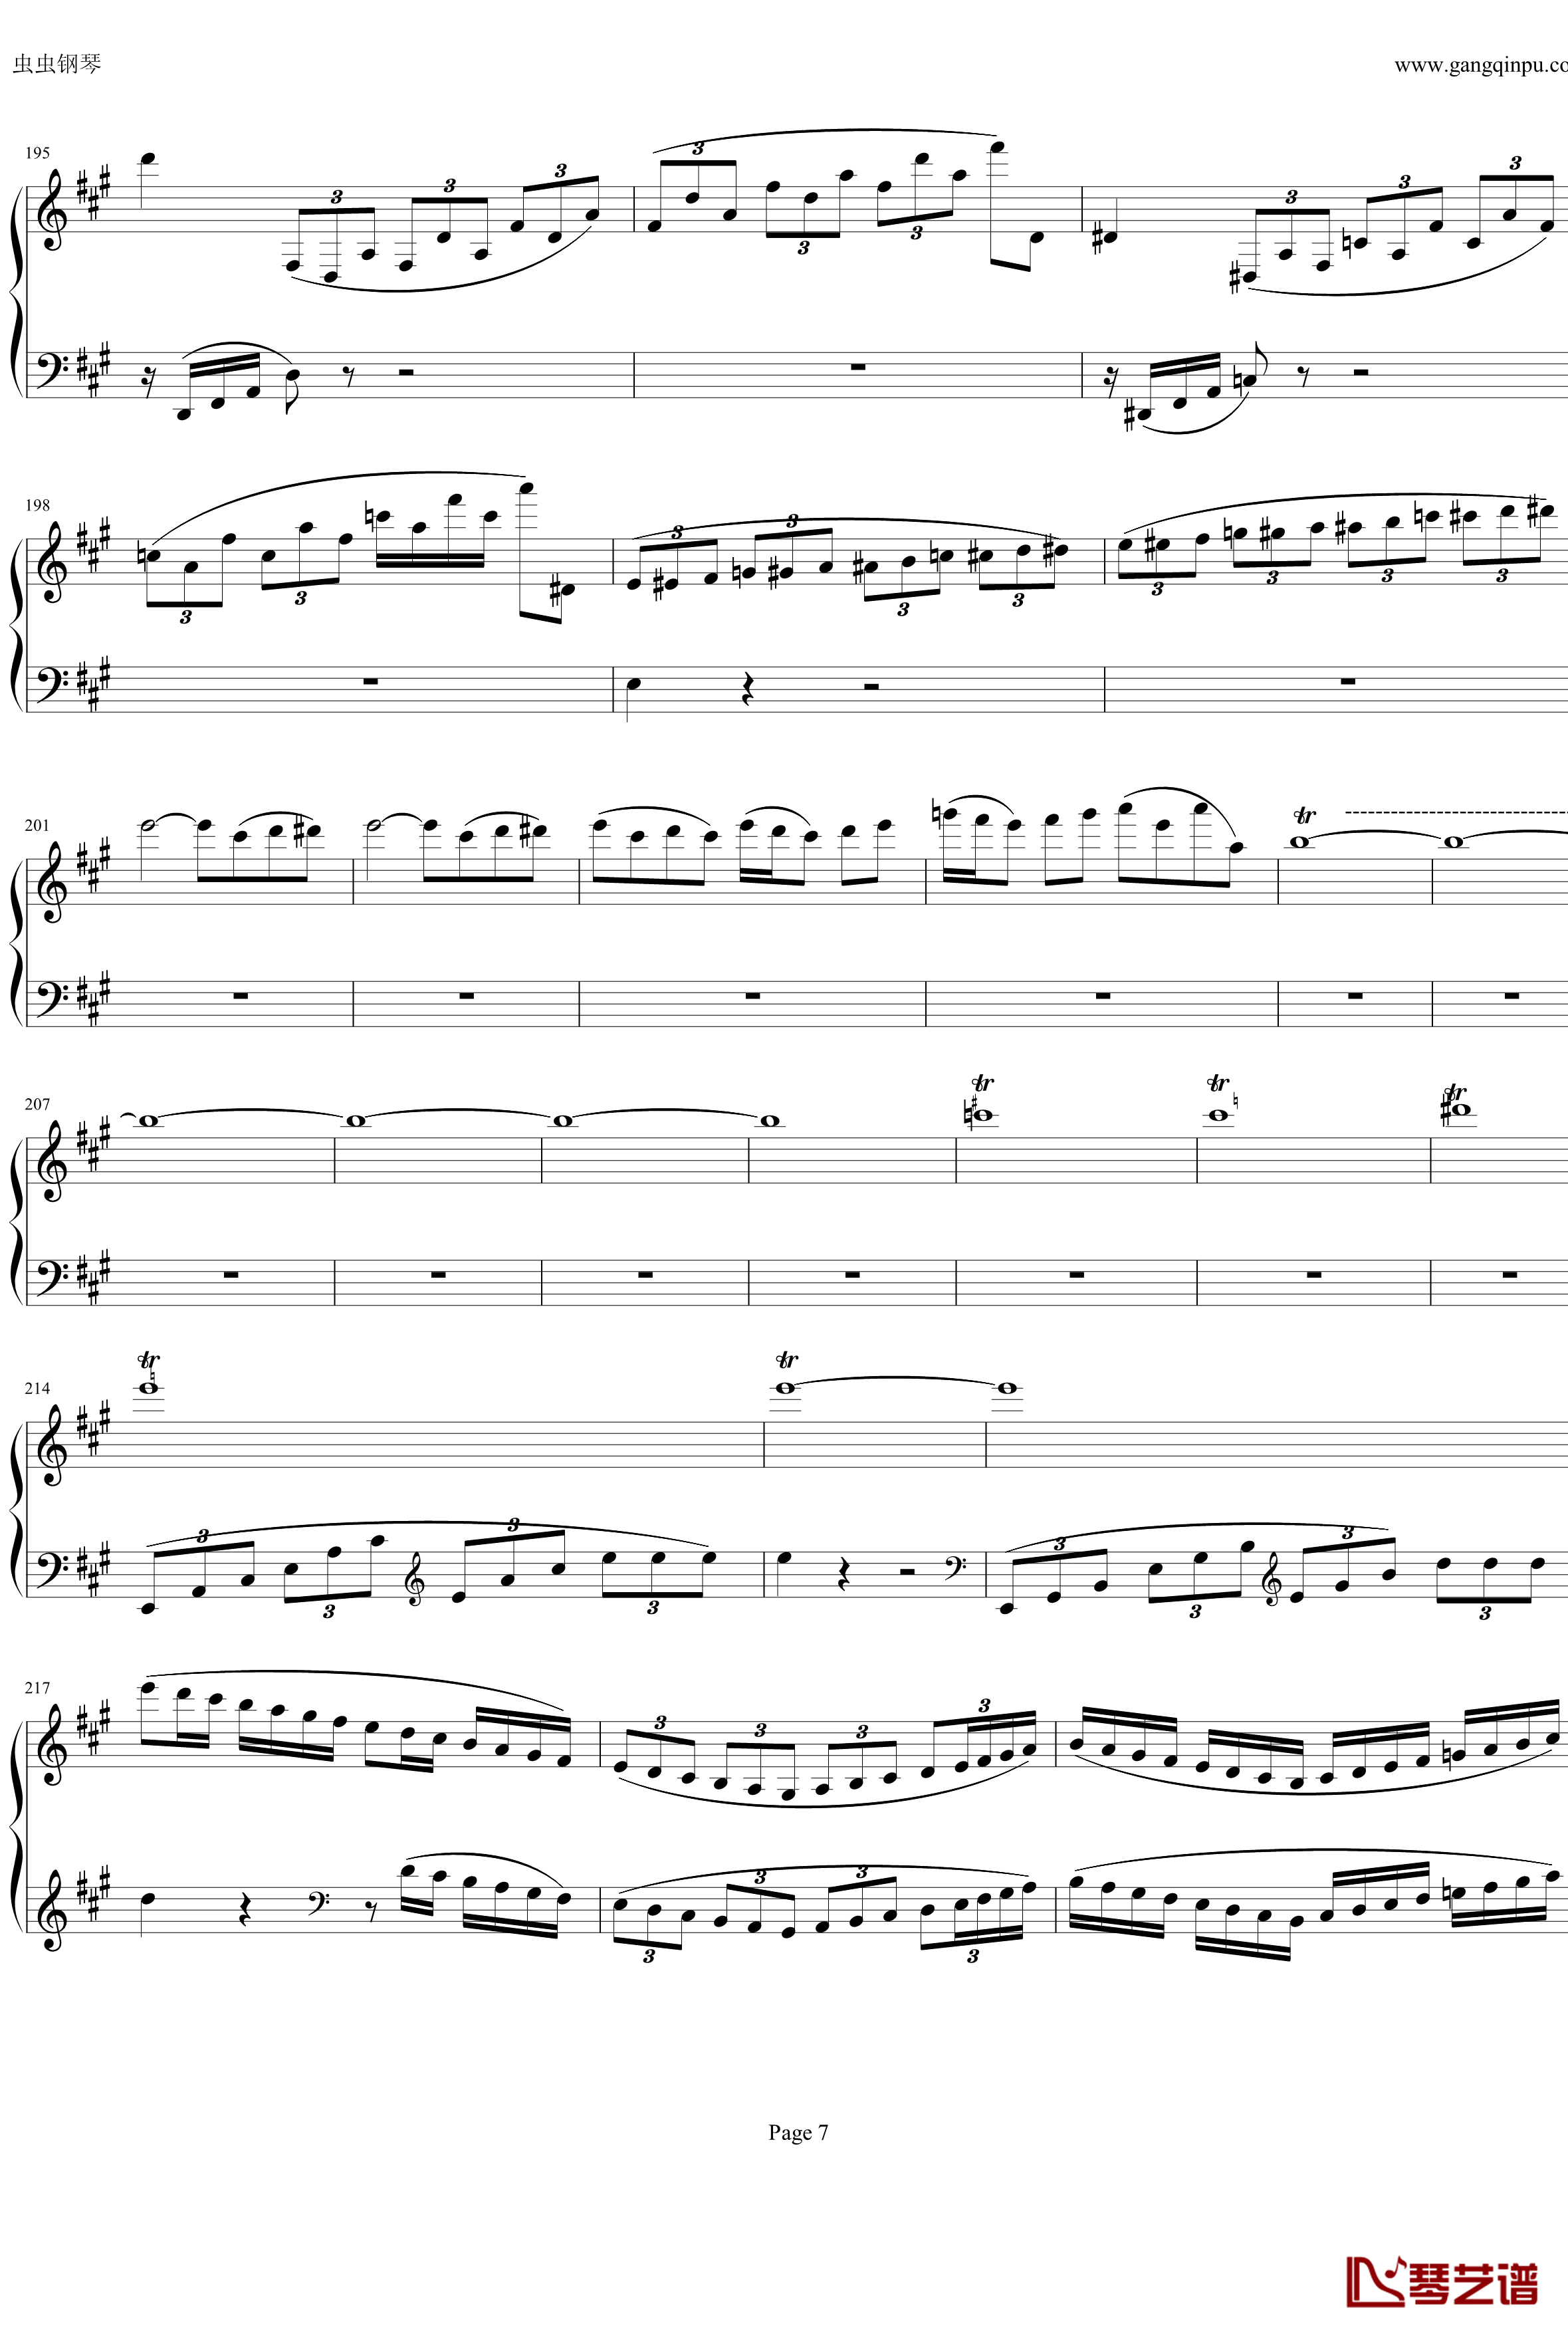 钢琴协奏曲Op61第一乐章钢琴谱-贝多芬-beethoven7